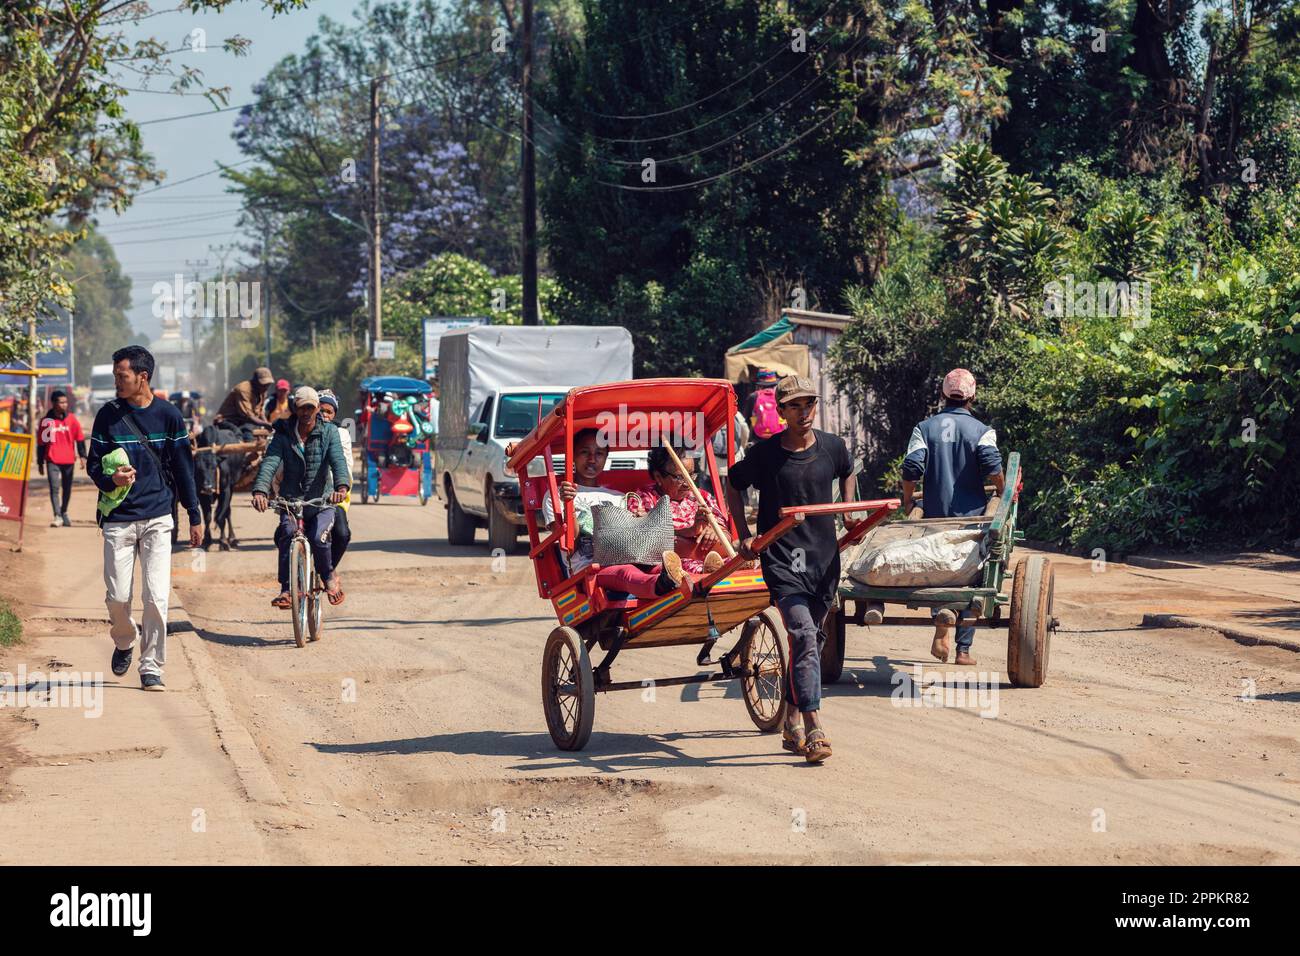 Ein traditionelles Rikscha-Fahrrad mit madagassischen Einwohnern auf der Straße von Antsirabe, eine der Möglichkeiten, Geld zu verdienen. Das Alltagsleben auf der Straße Madagaskars. Stockfoto